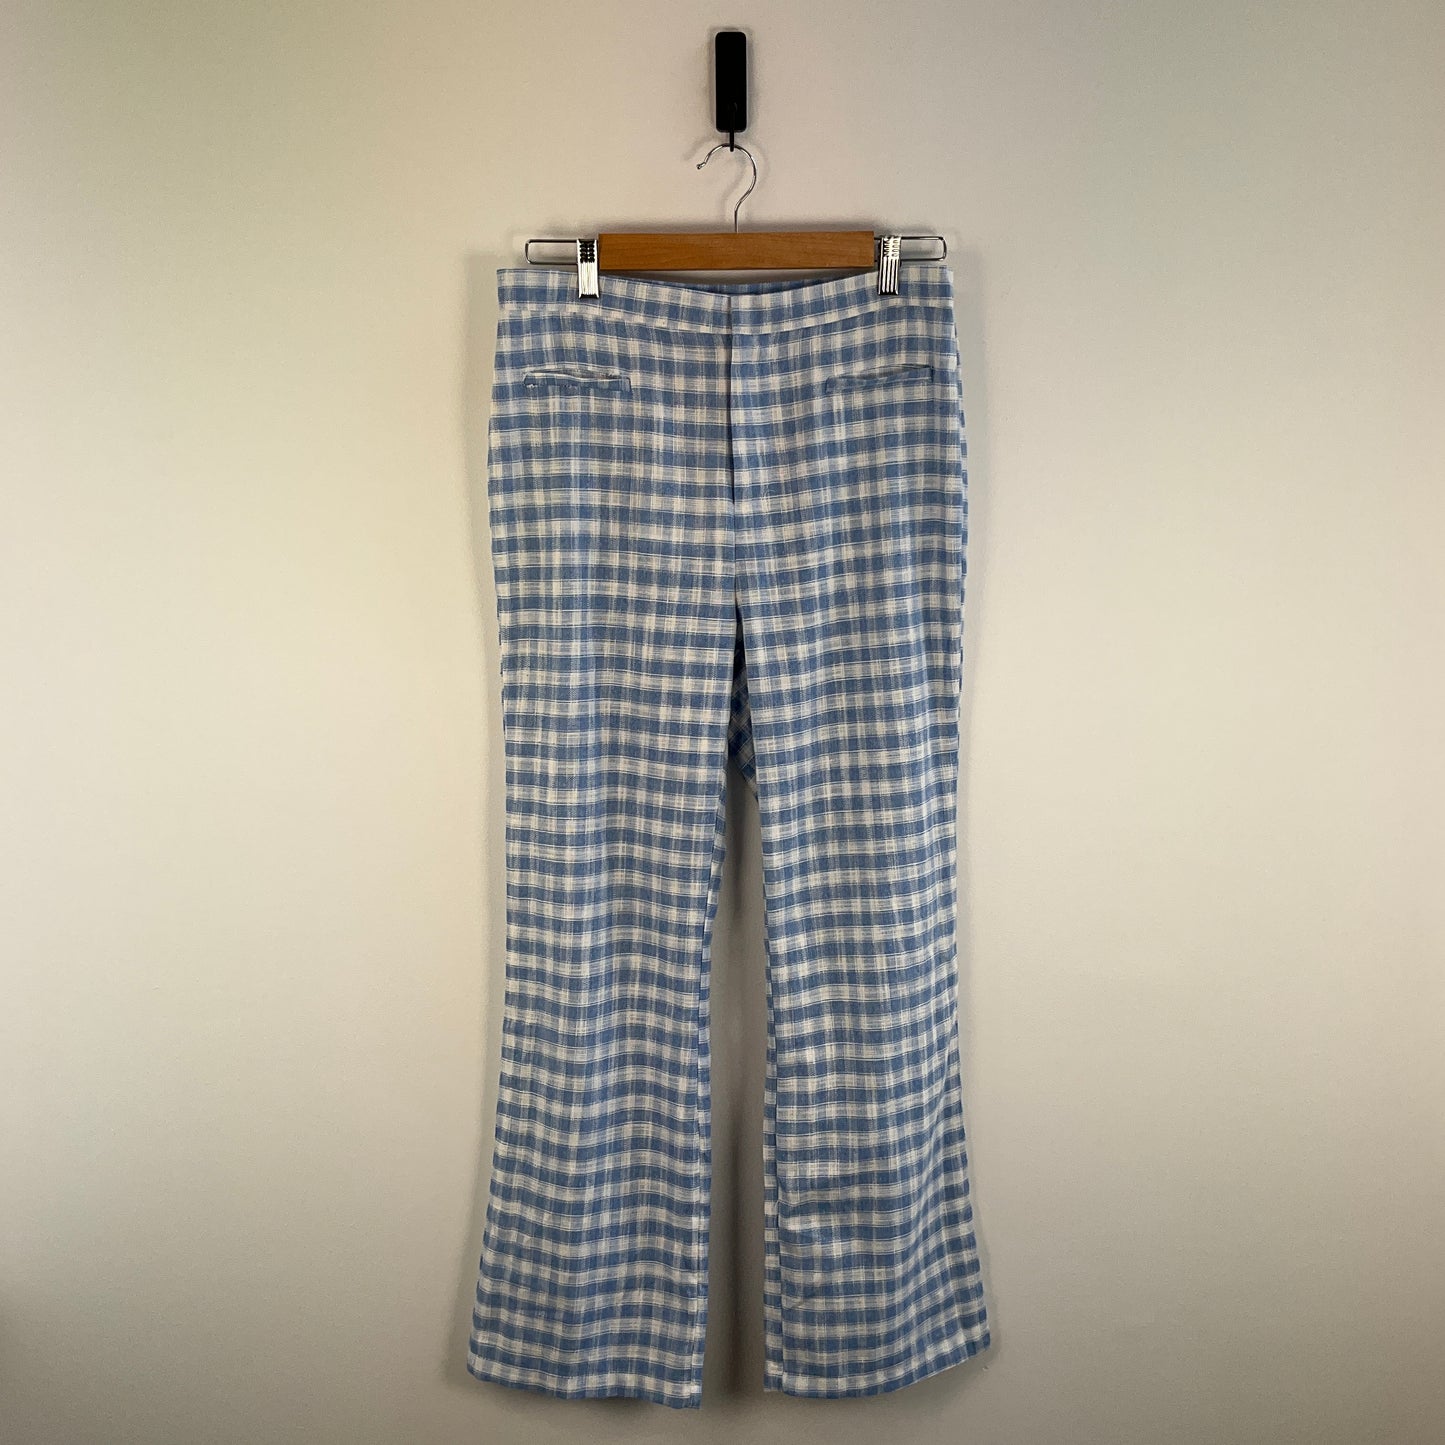 Oscar Street - Linen Style Pants